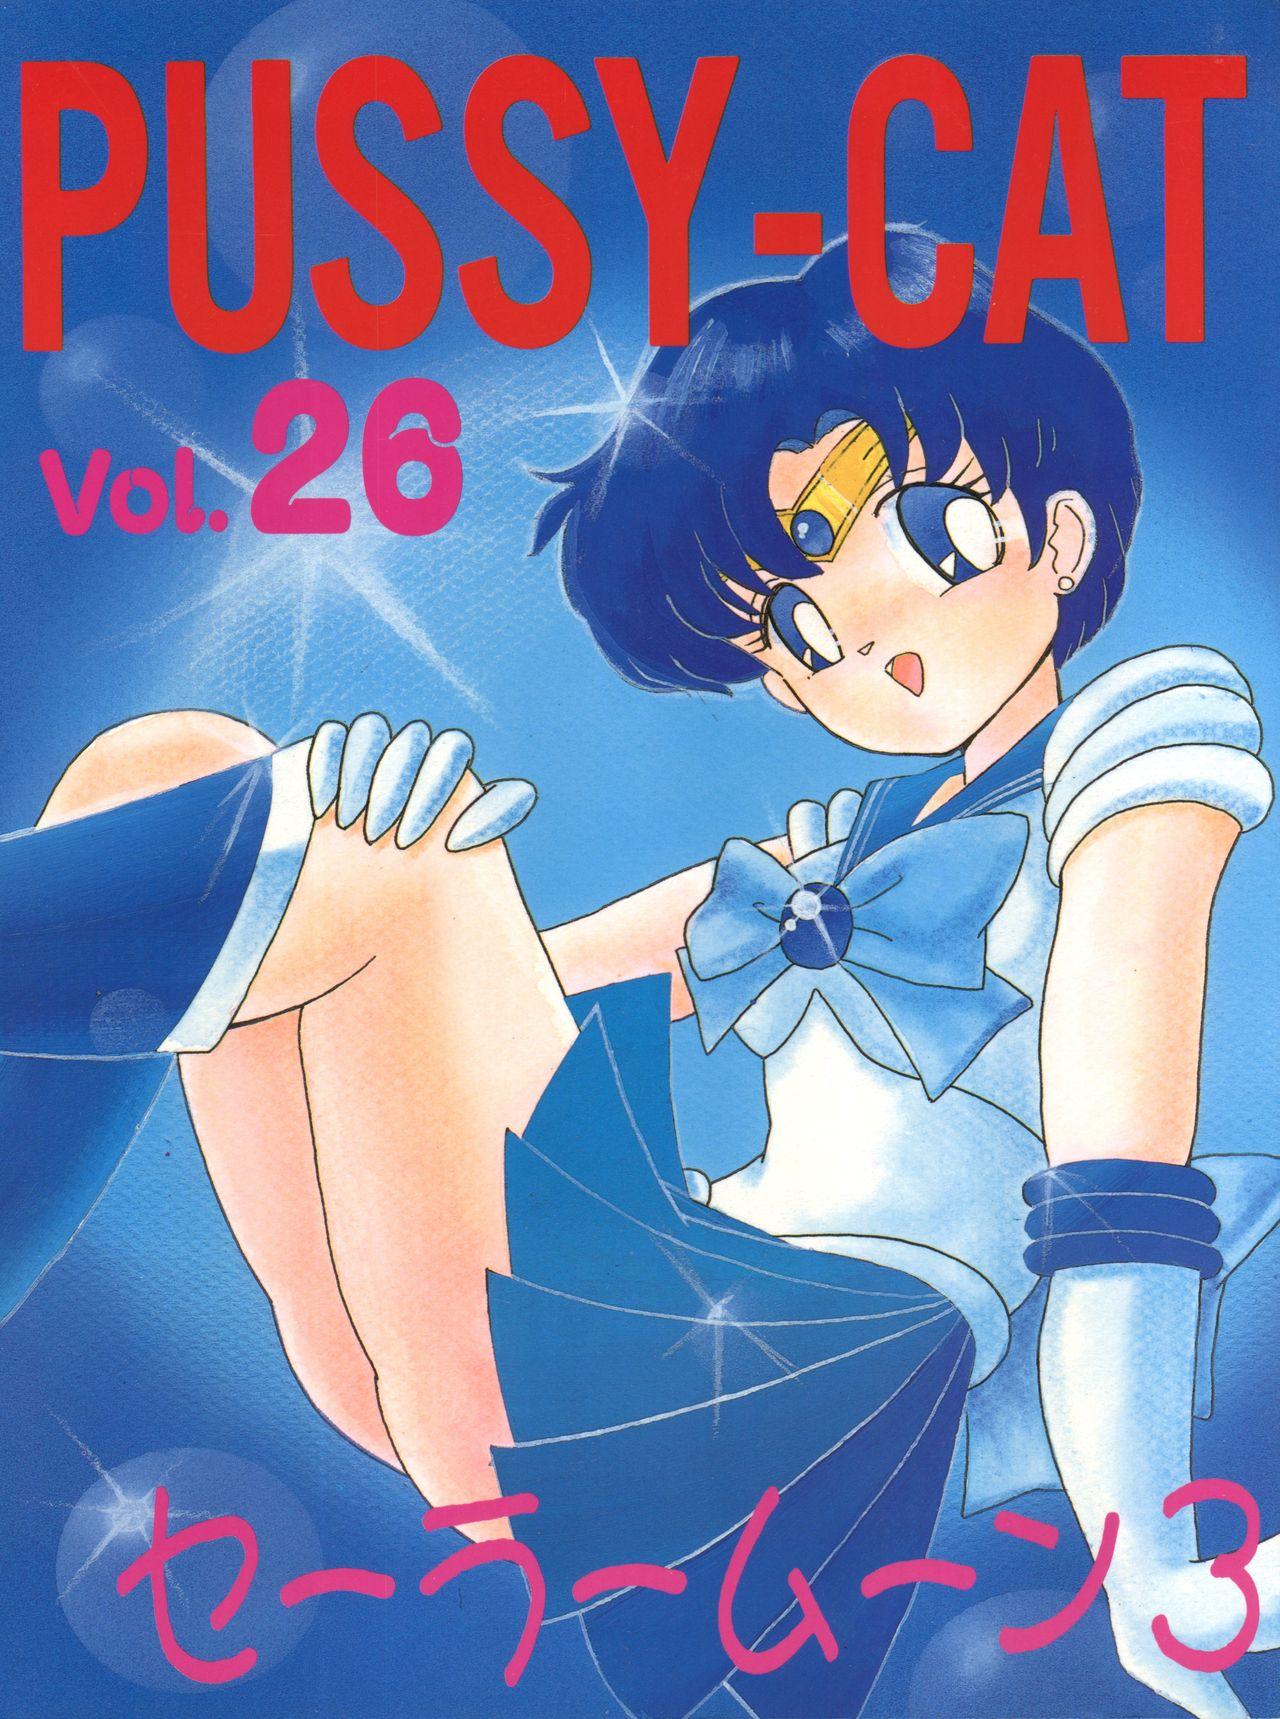 PUSSY CAT Vol. 26 Sailor Moon 3 0